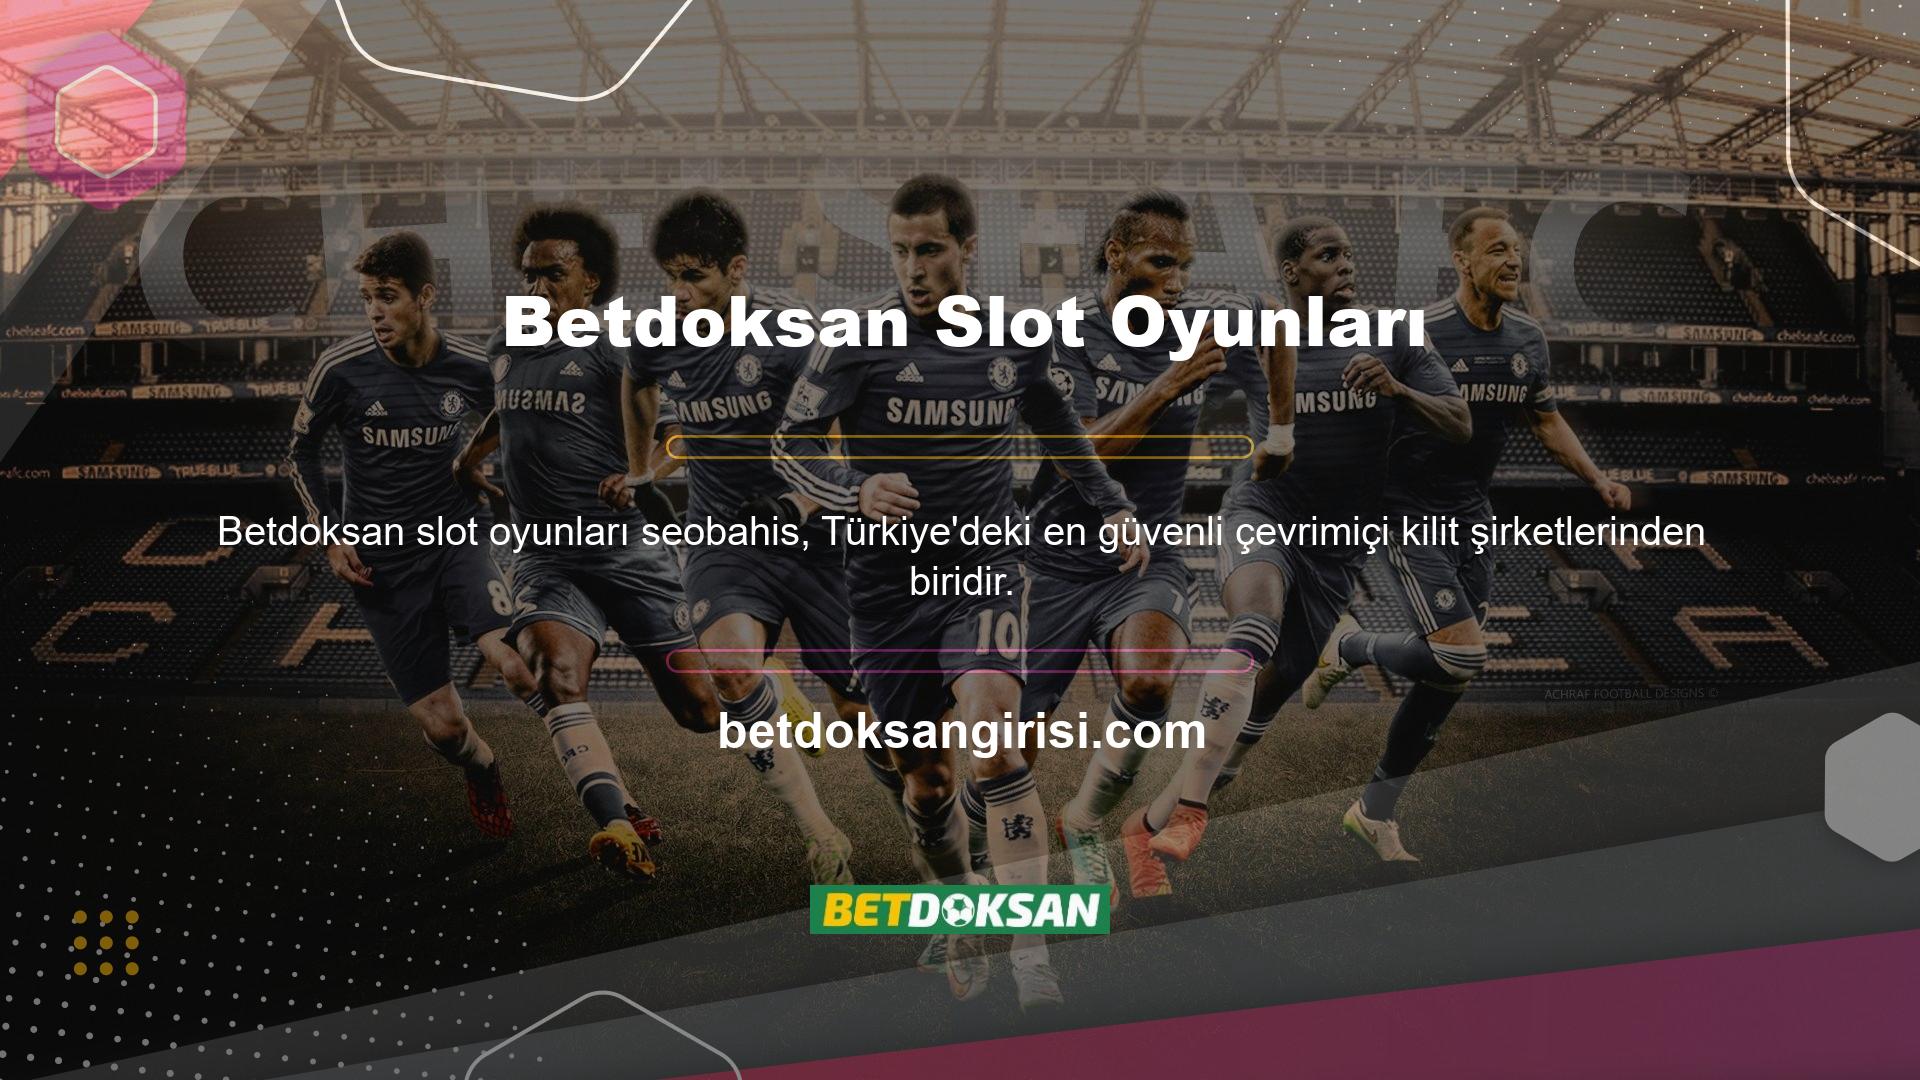 Betdoksan, Türk poker oyun sektörünün en popüler ve saygın şirketlerinden biri haline geldi